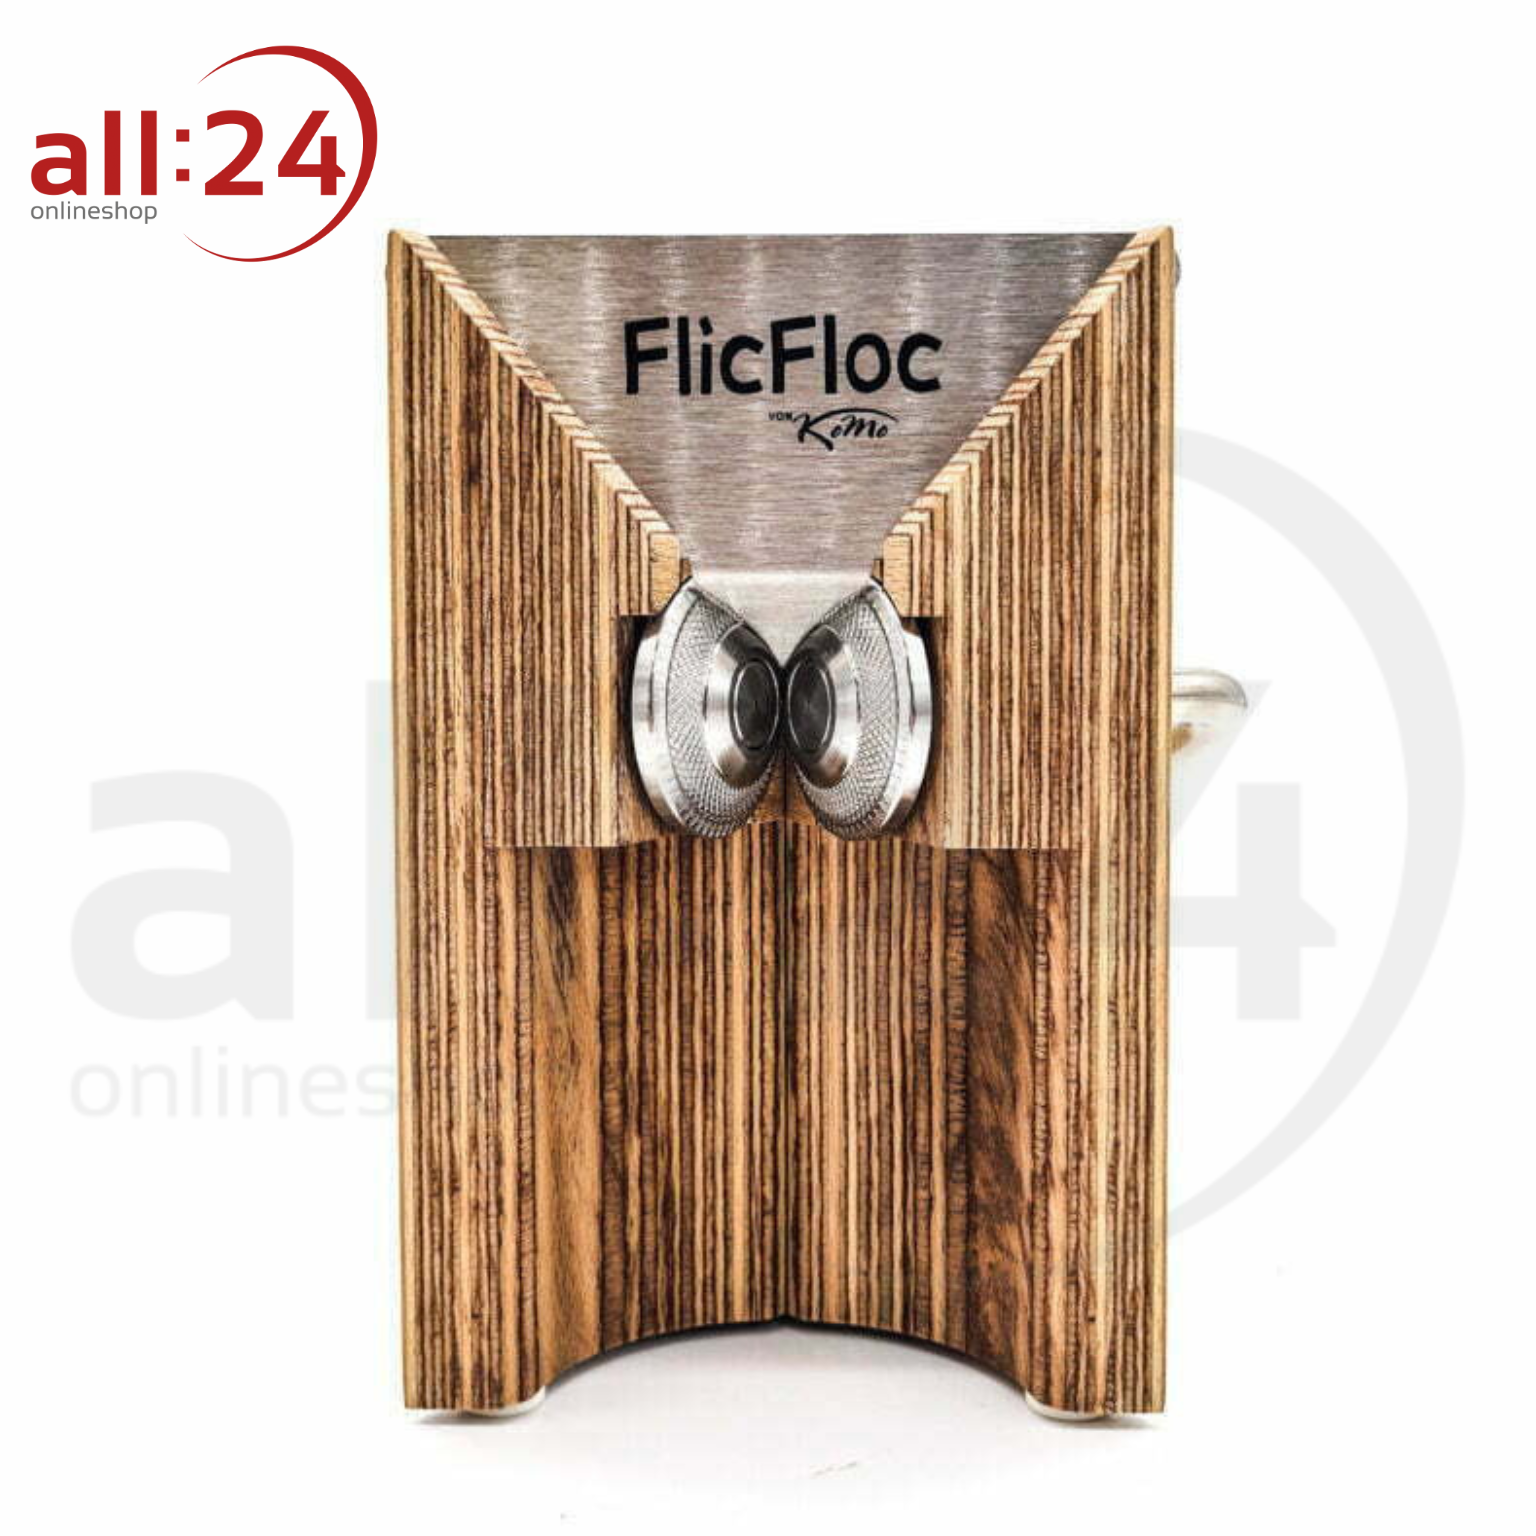 KoMo FlicFloc Flocker - Frische Flocken 